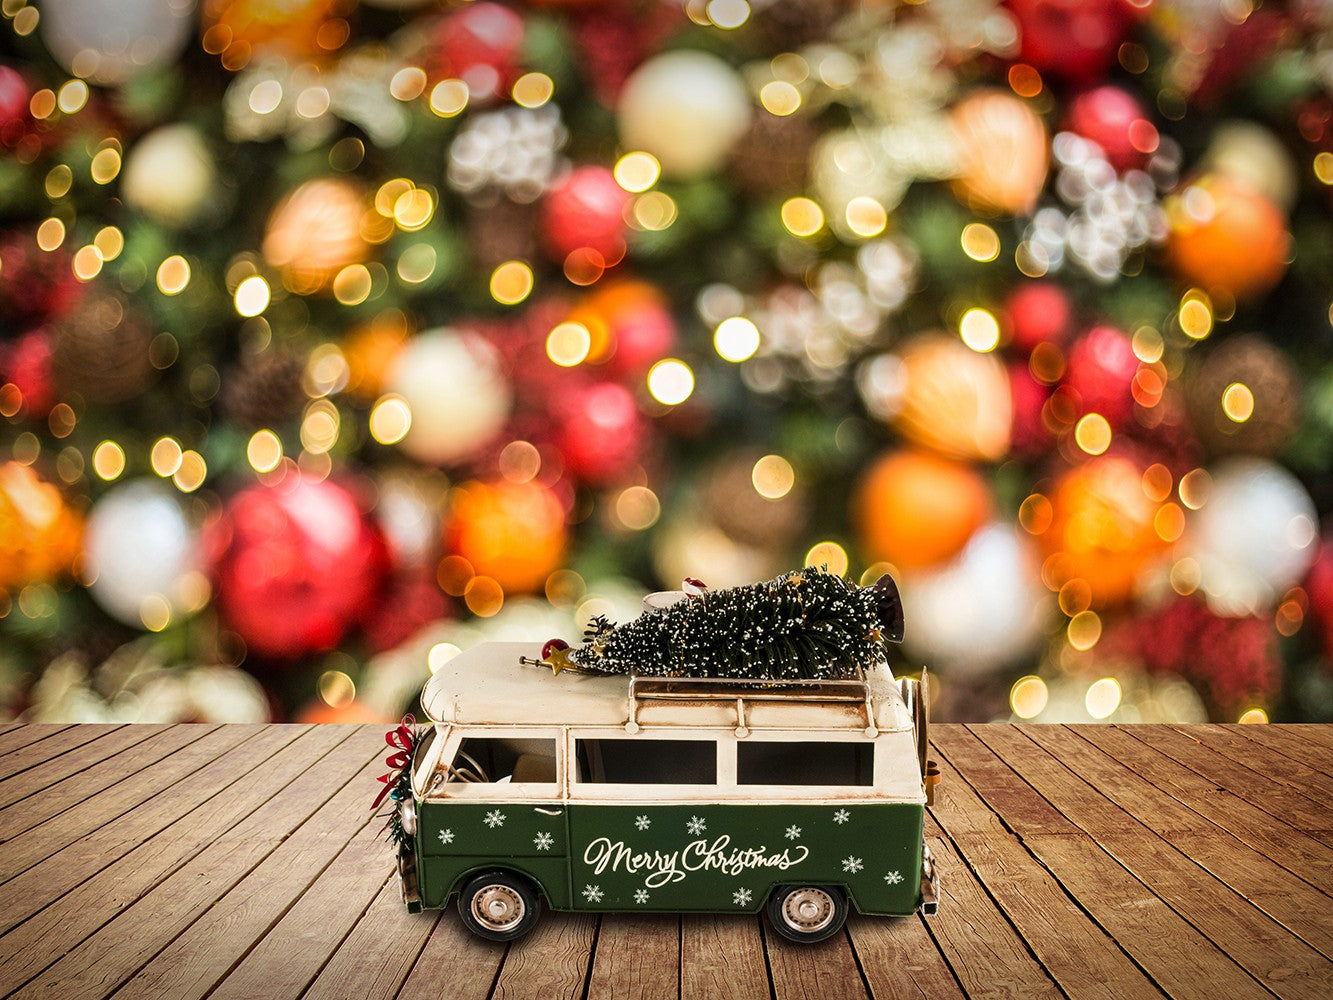 c1960s Volkswagen Christmas Bus Sculpture